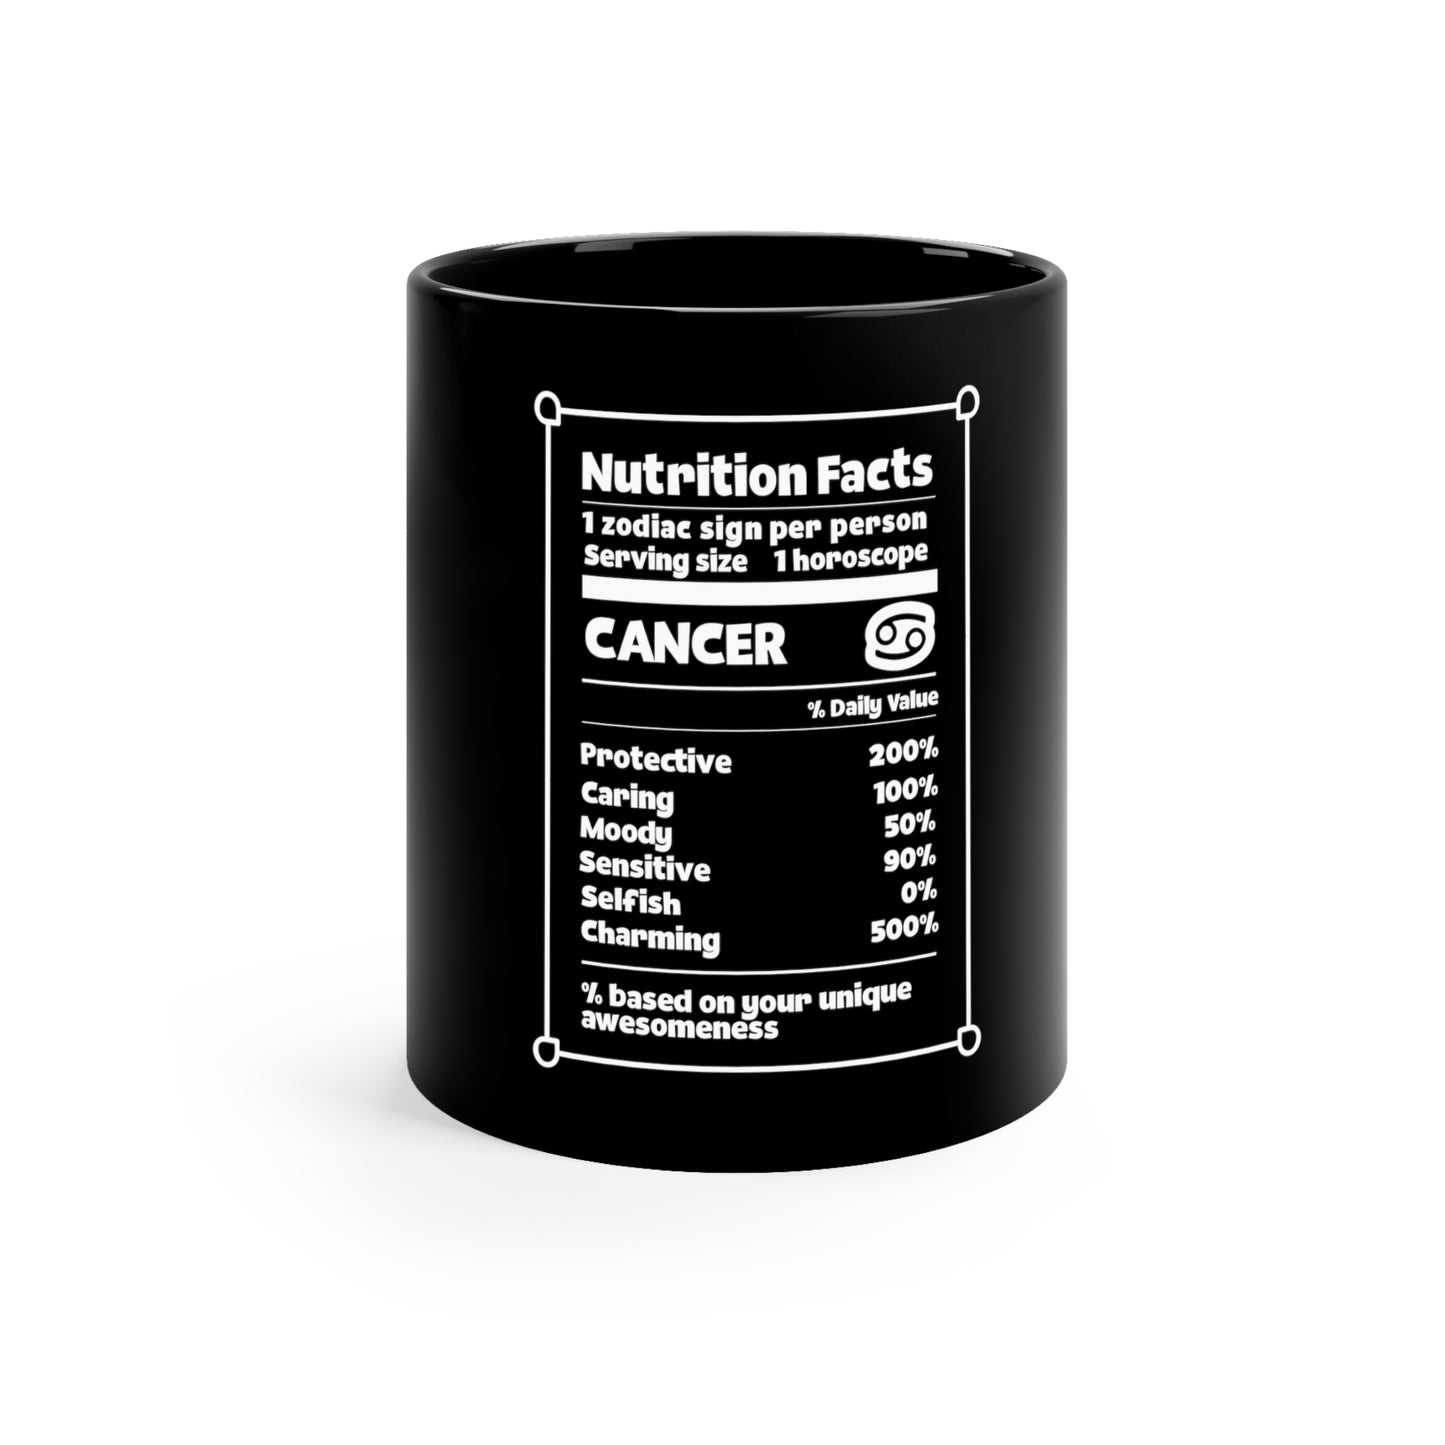 Información nutricional del zodiaco del cáncer - Taza negra de cerámica de 11 oz